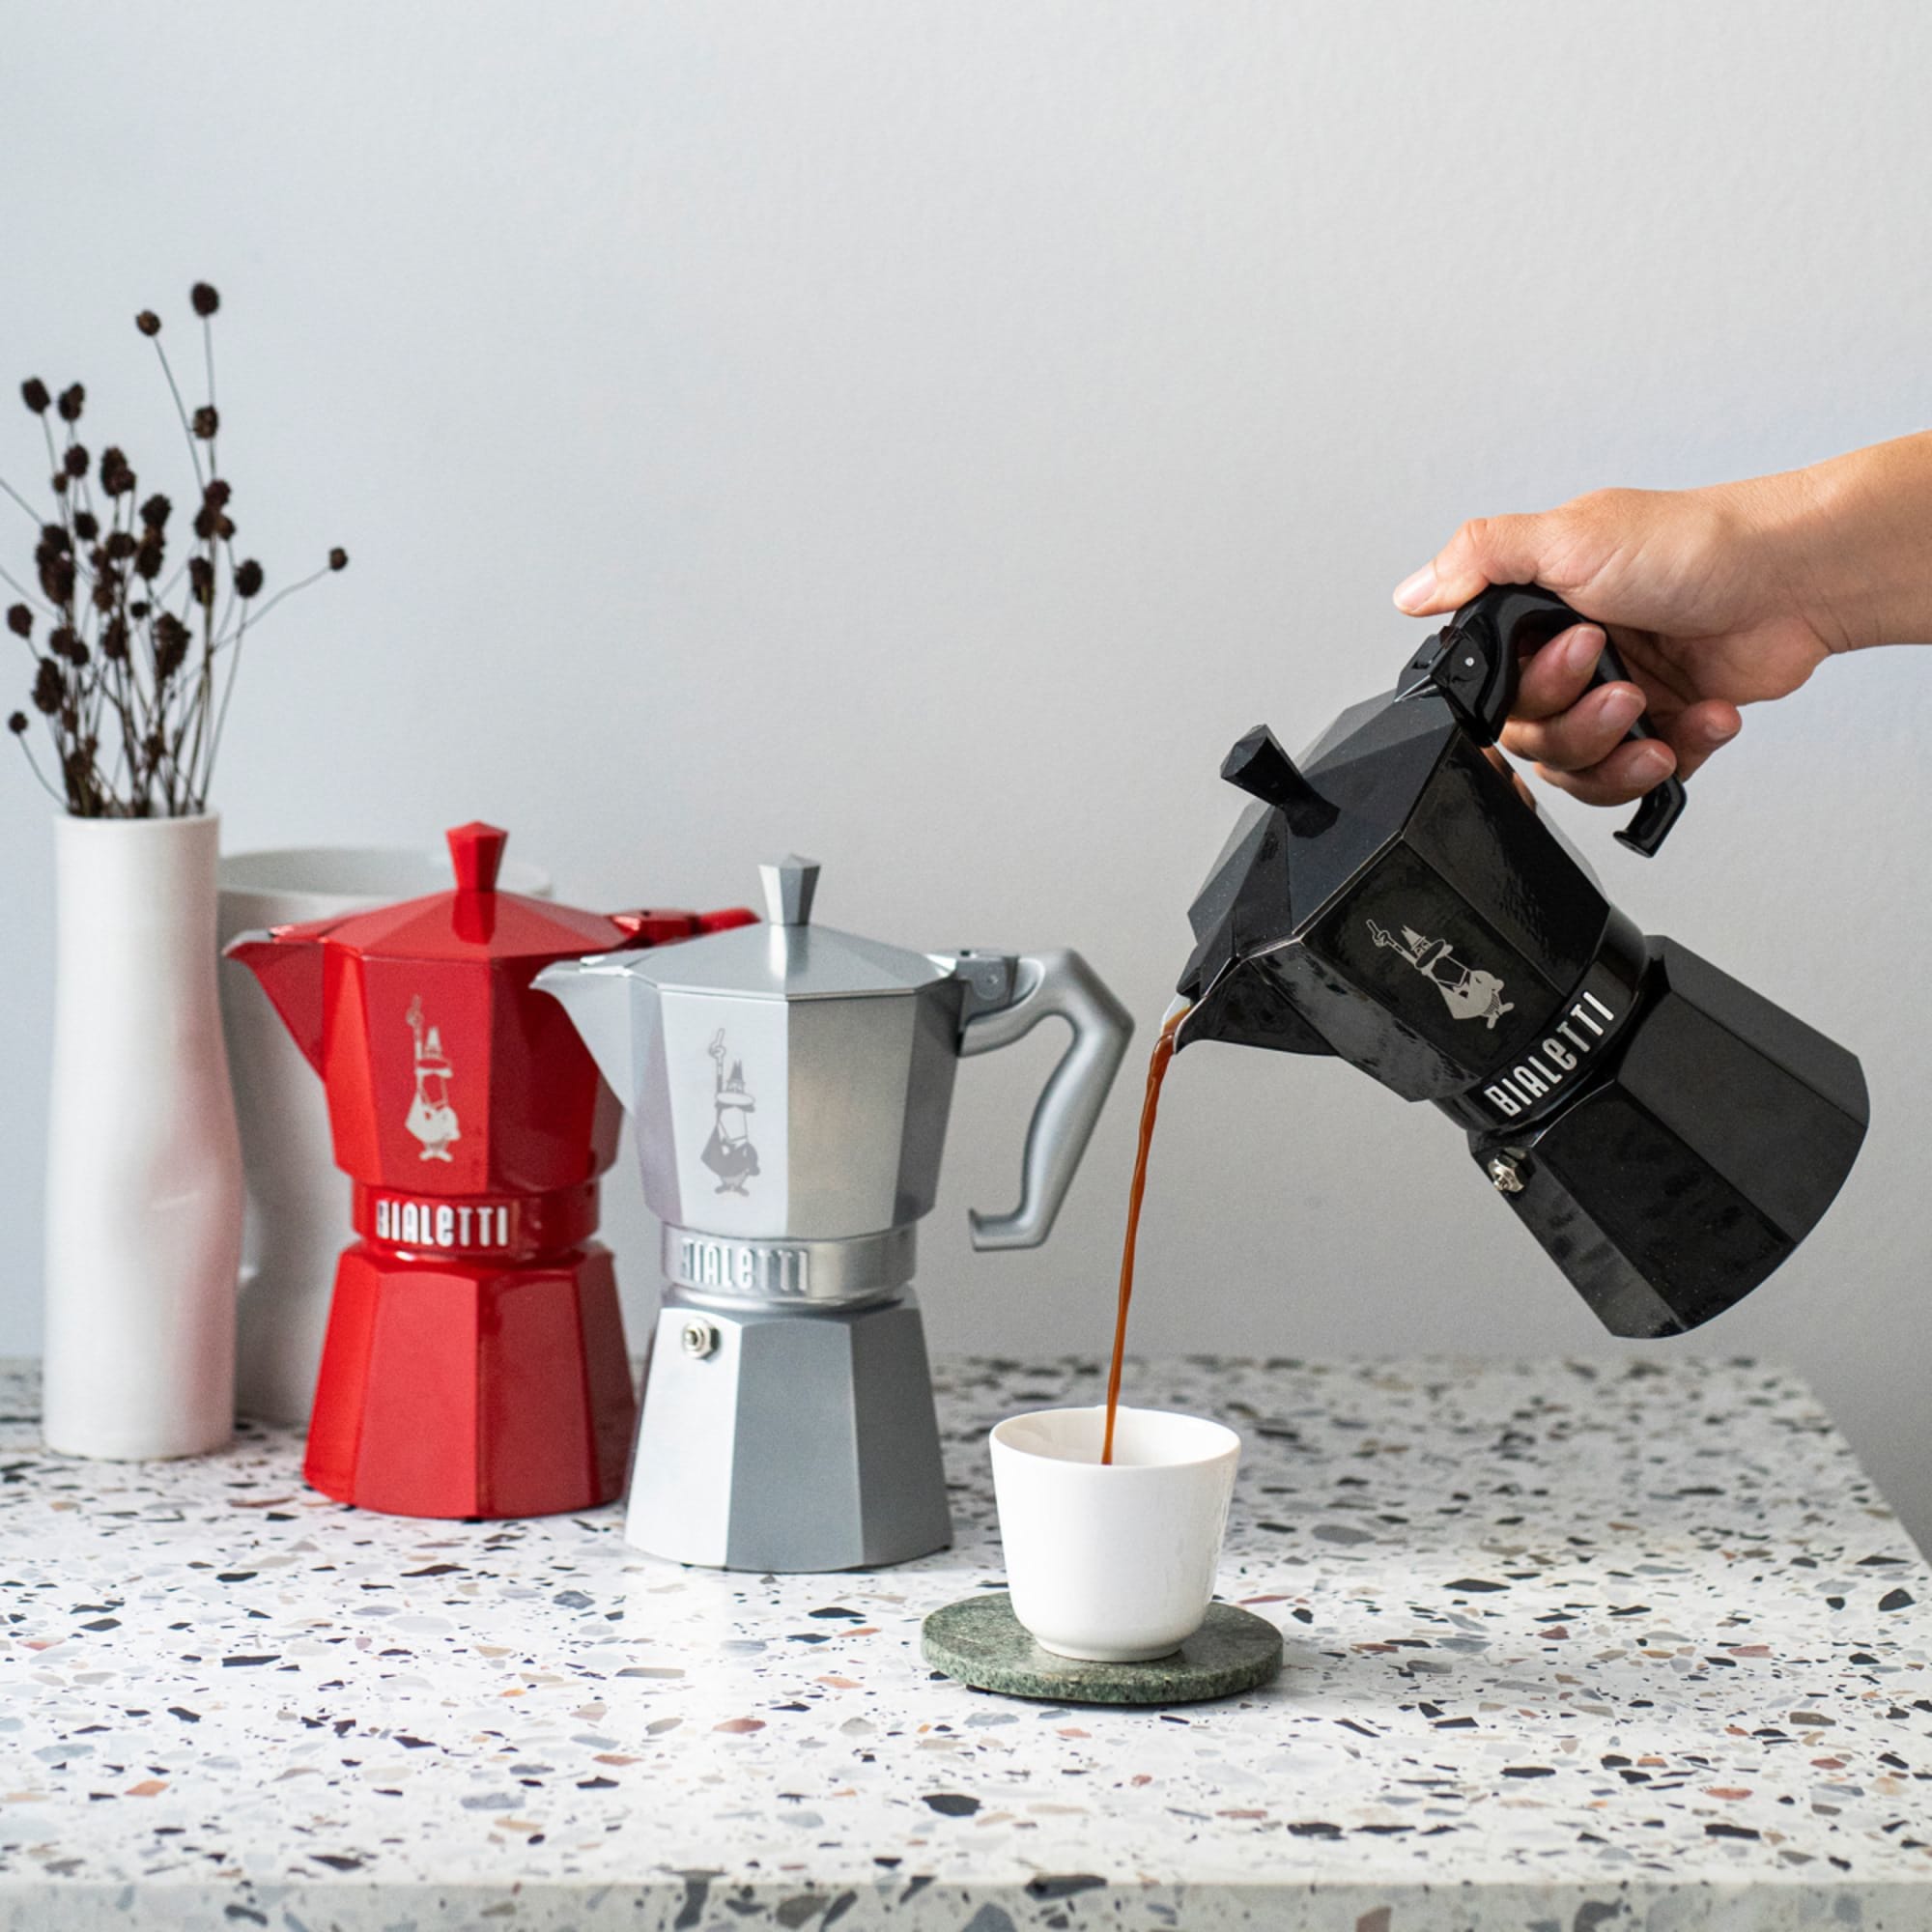 Bialetti 2 Cups Mini Express BLACK Stovetop Espresso Maker